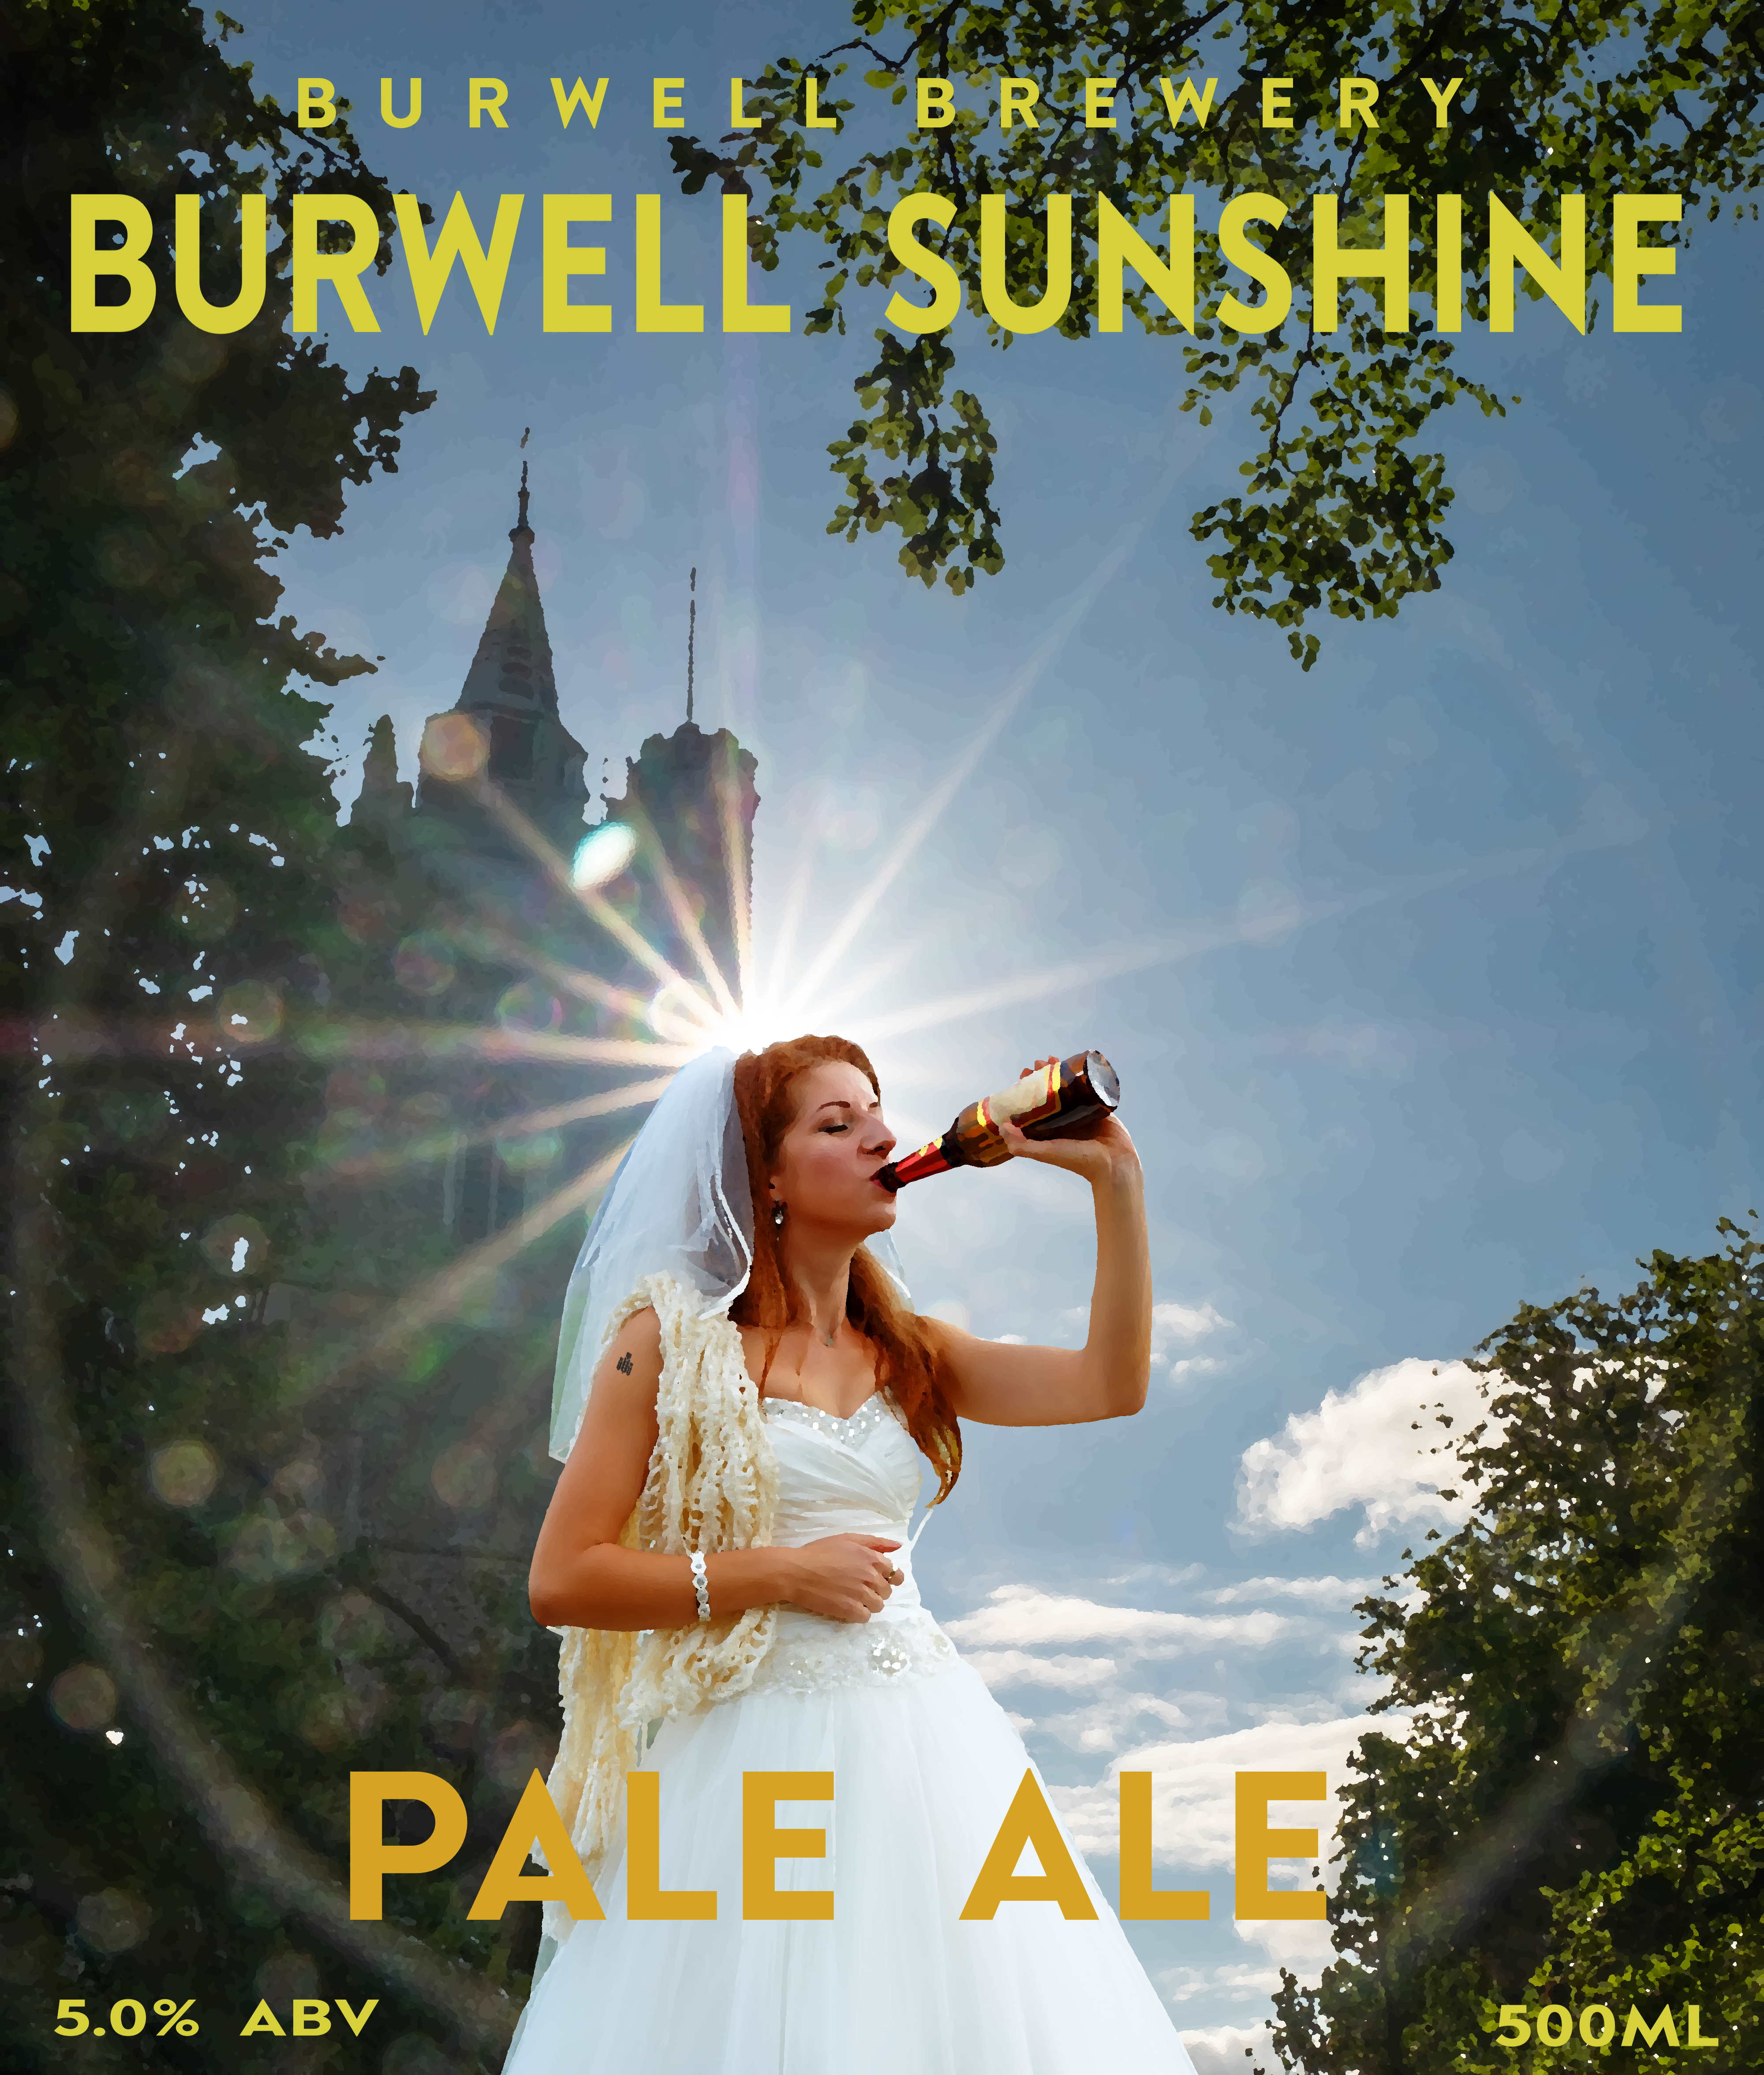 Burwell Sunshine